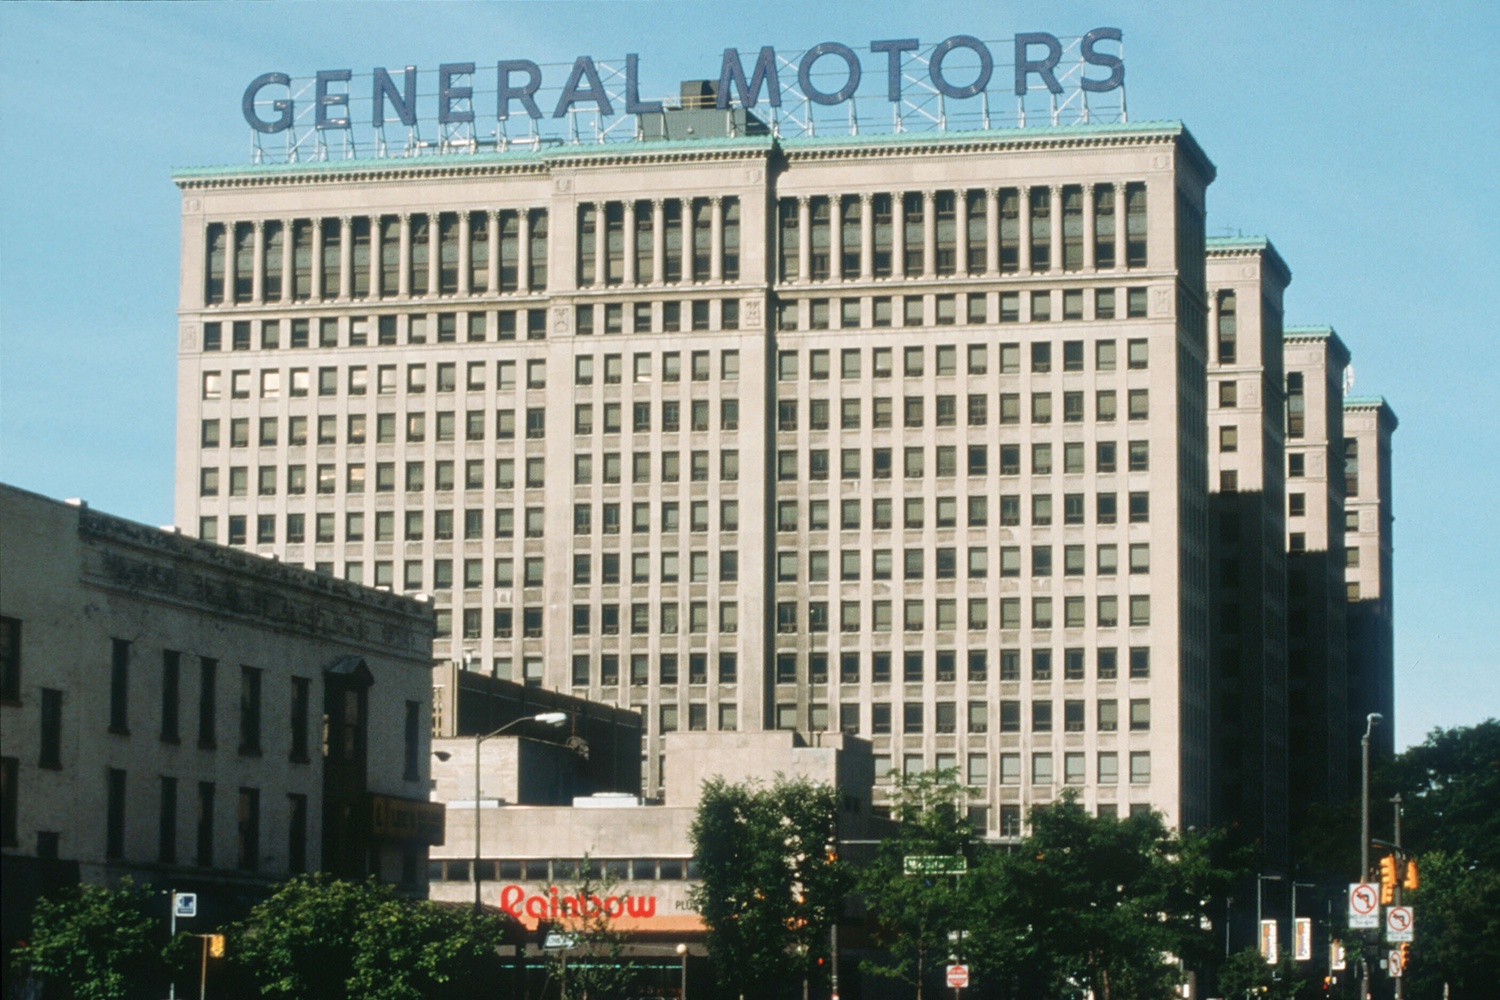 General Motors headquarters Flint Michigan